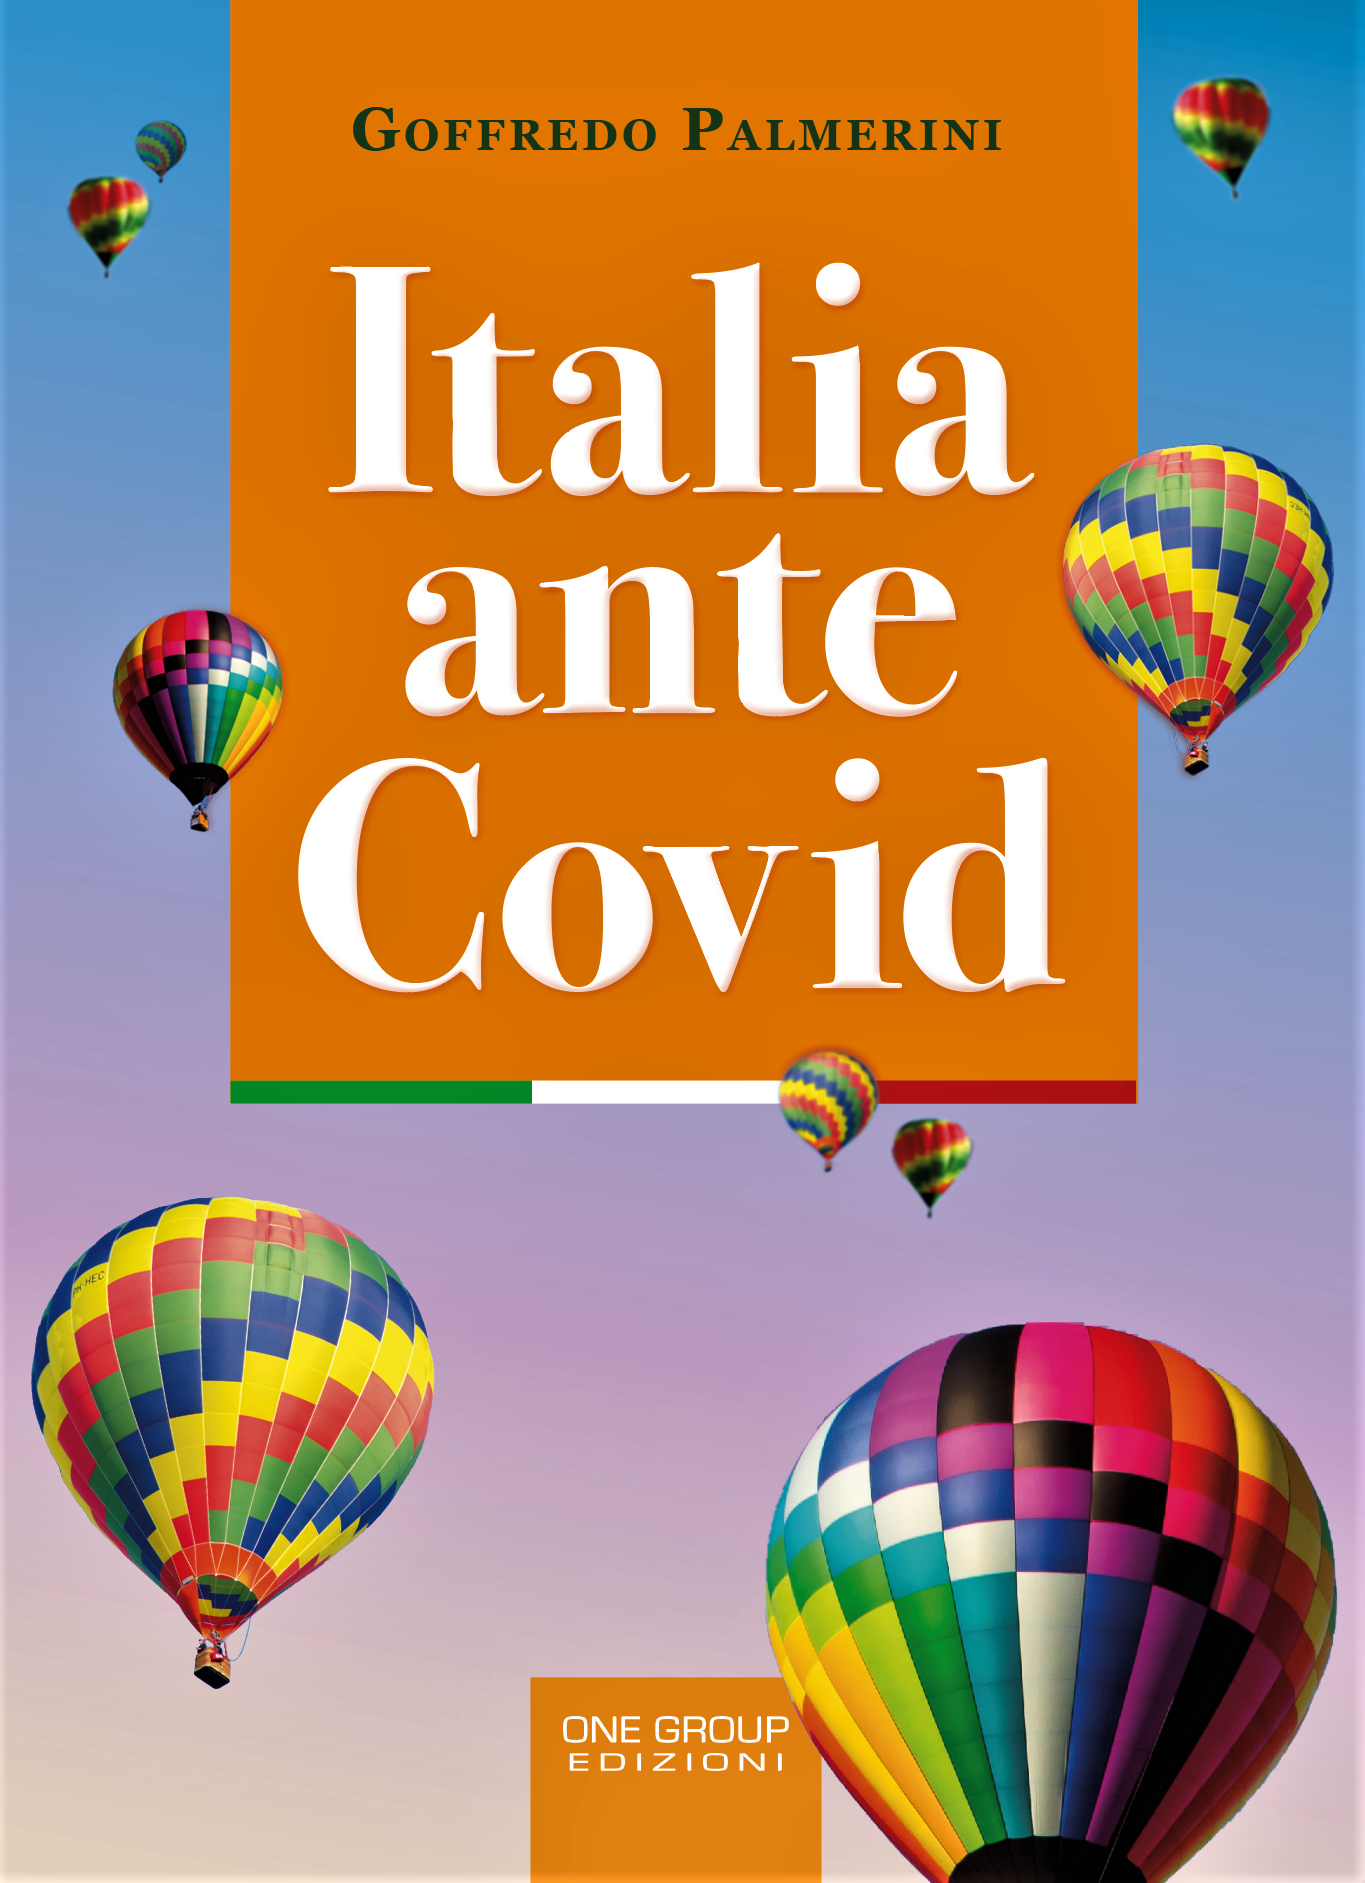 Libri&Editoria.Prossima l’uscita di “Italia ante Covid”: il nuovo libro di Goffredo Palmerini